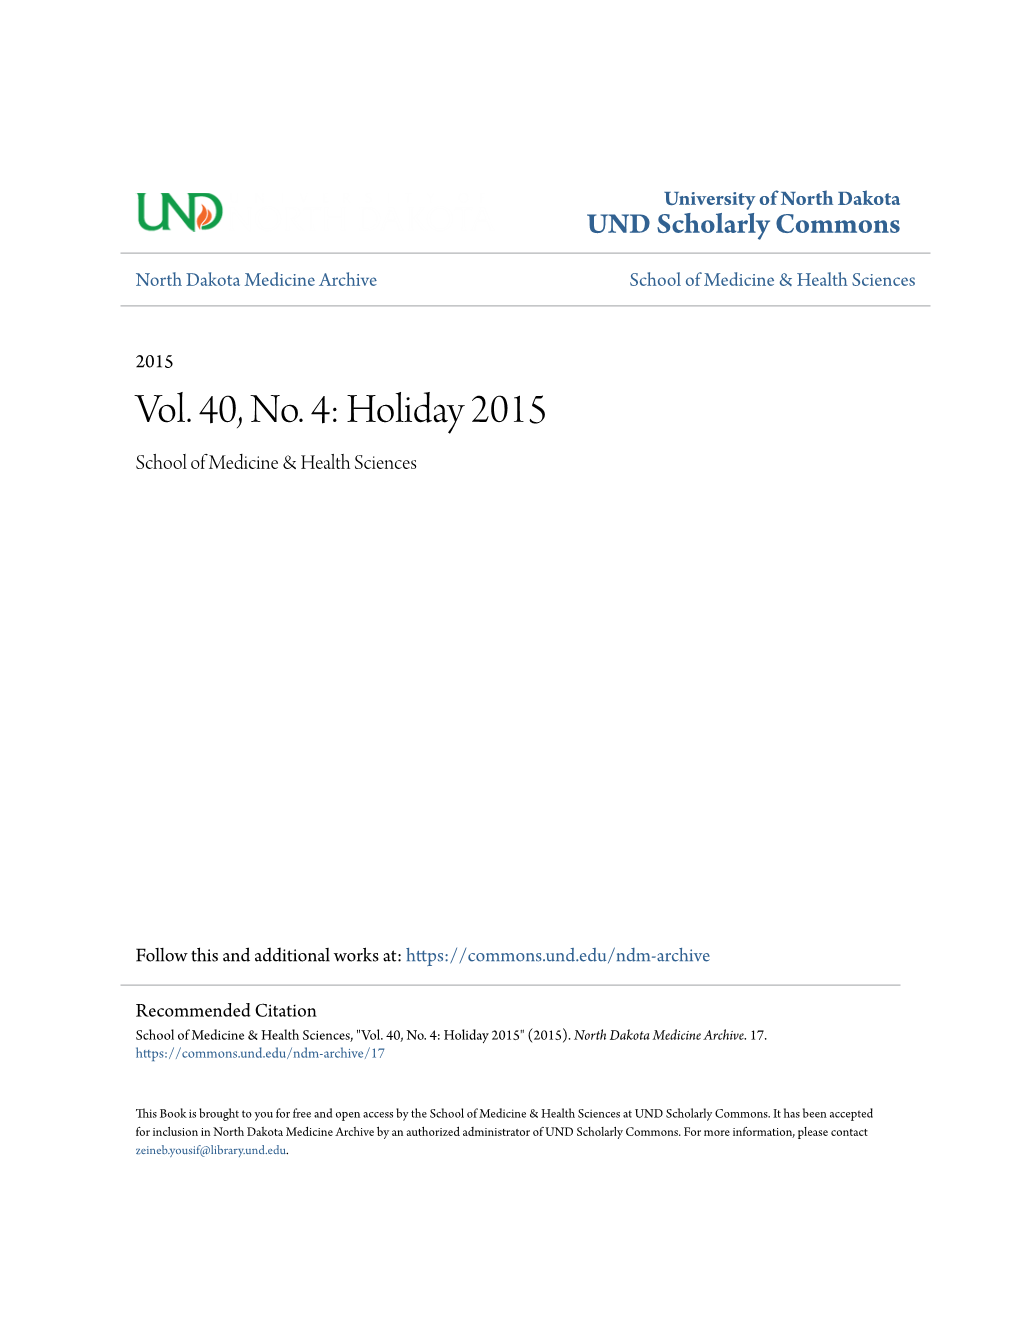 Vol. 40, No. 4: Holiday 2015 School of Medicine & Health Sciences